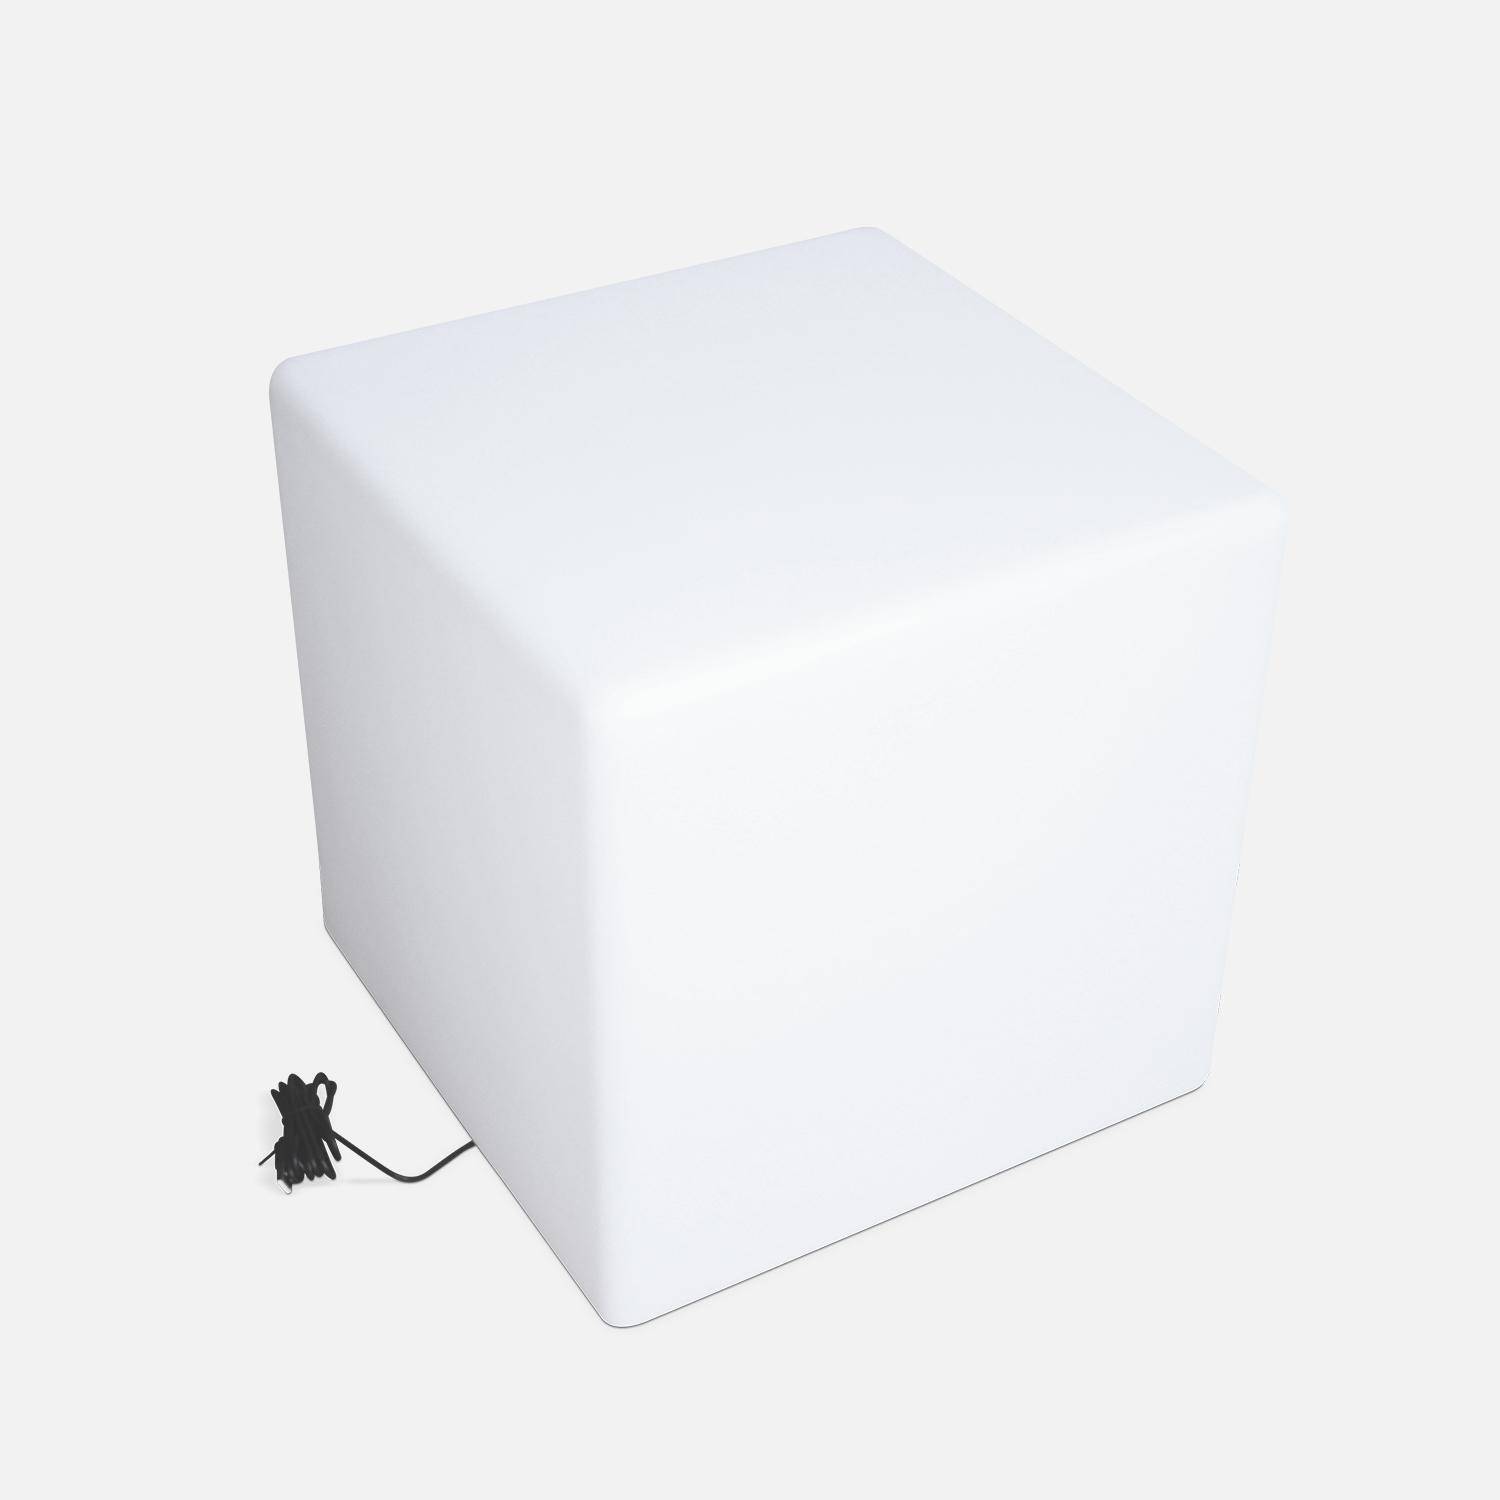 Cube LED 40cm – Cube décoratif lumineux, 40x40cm, blanc chaud, commande à distance Photo3